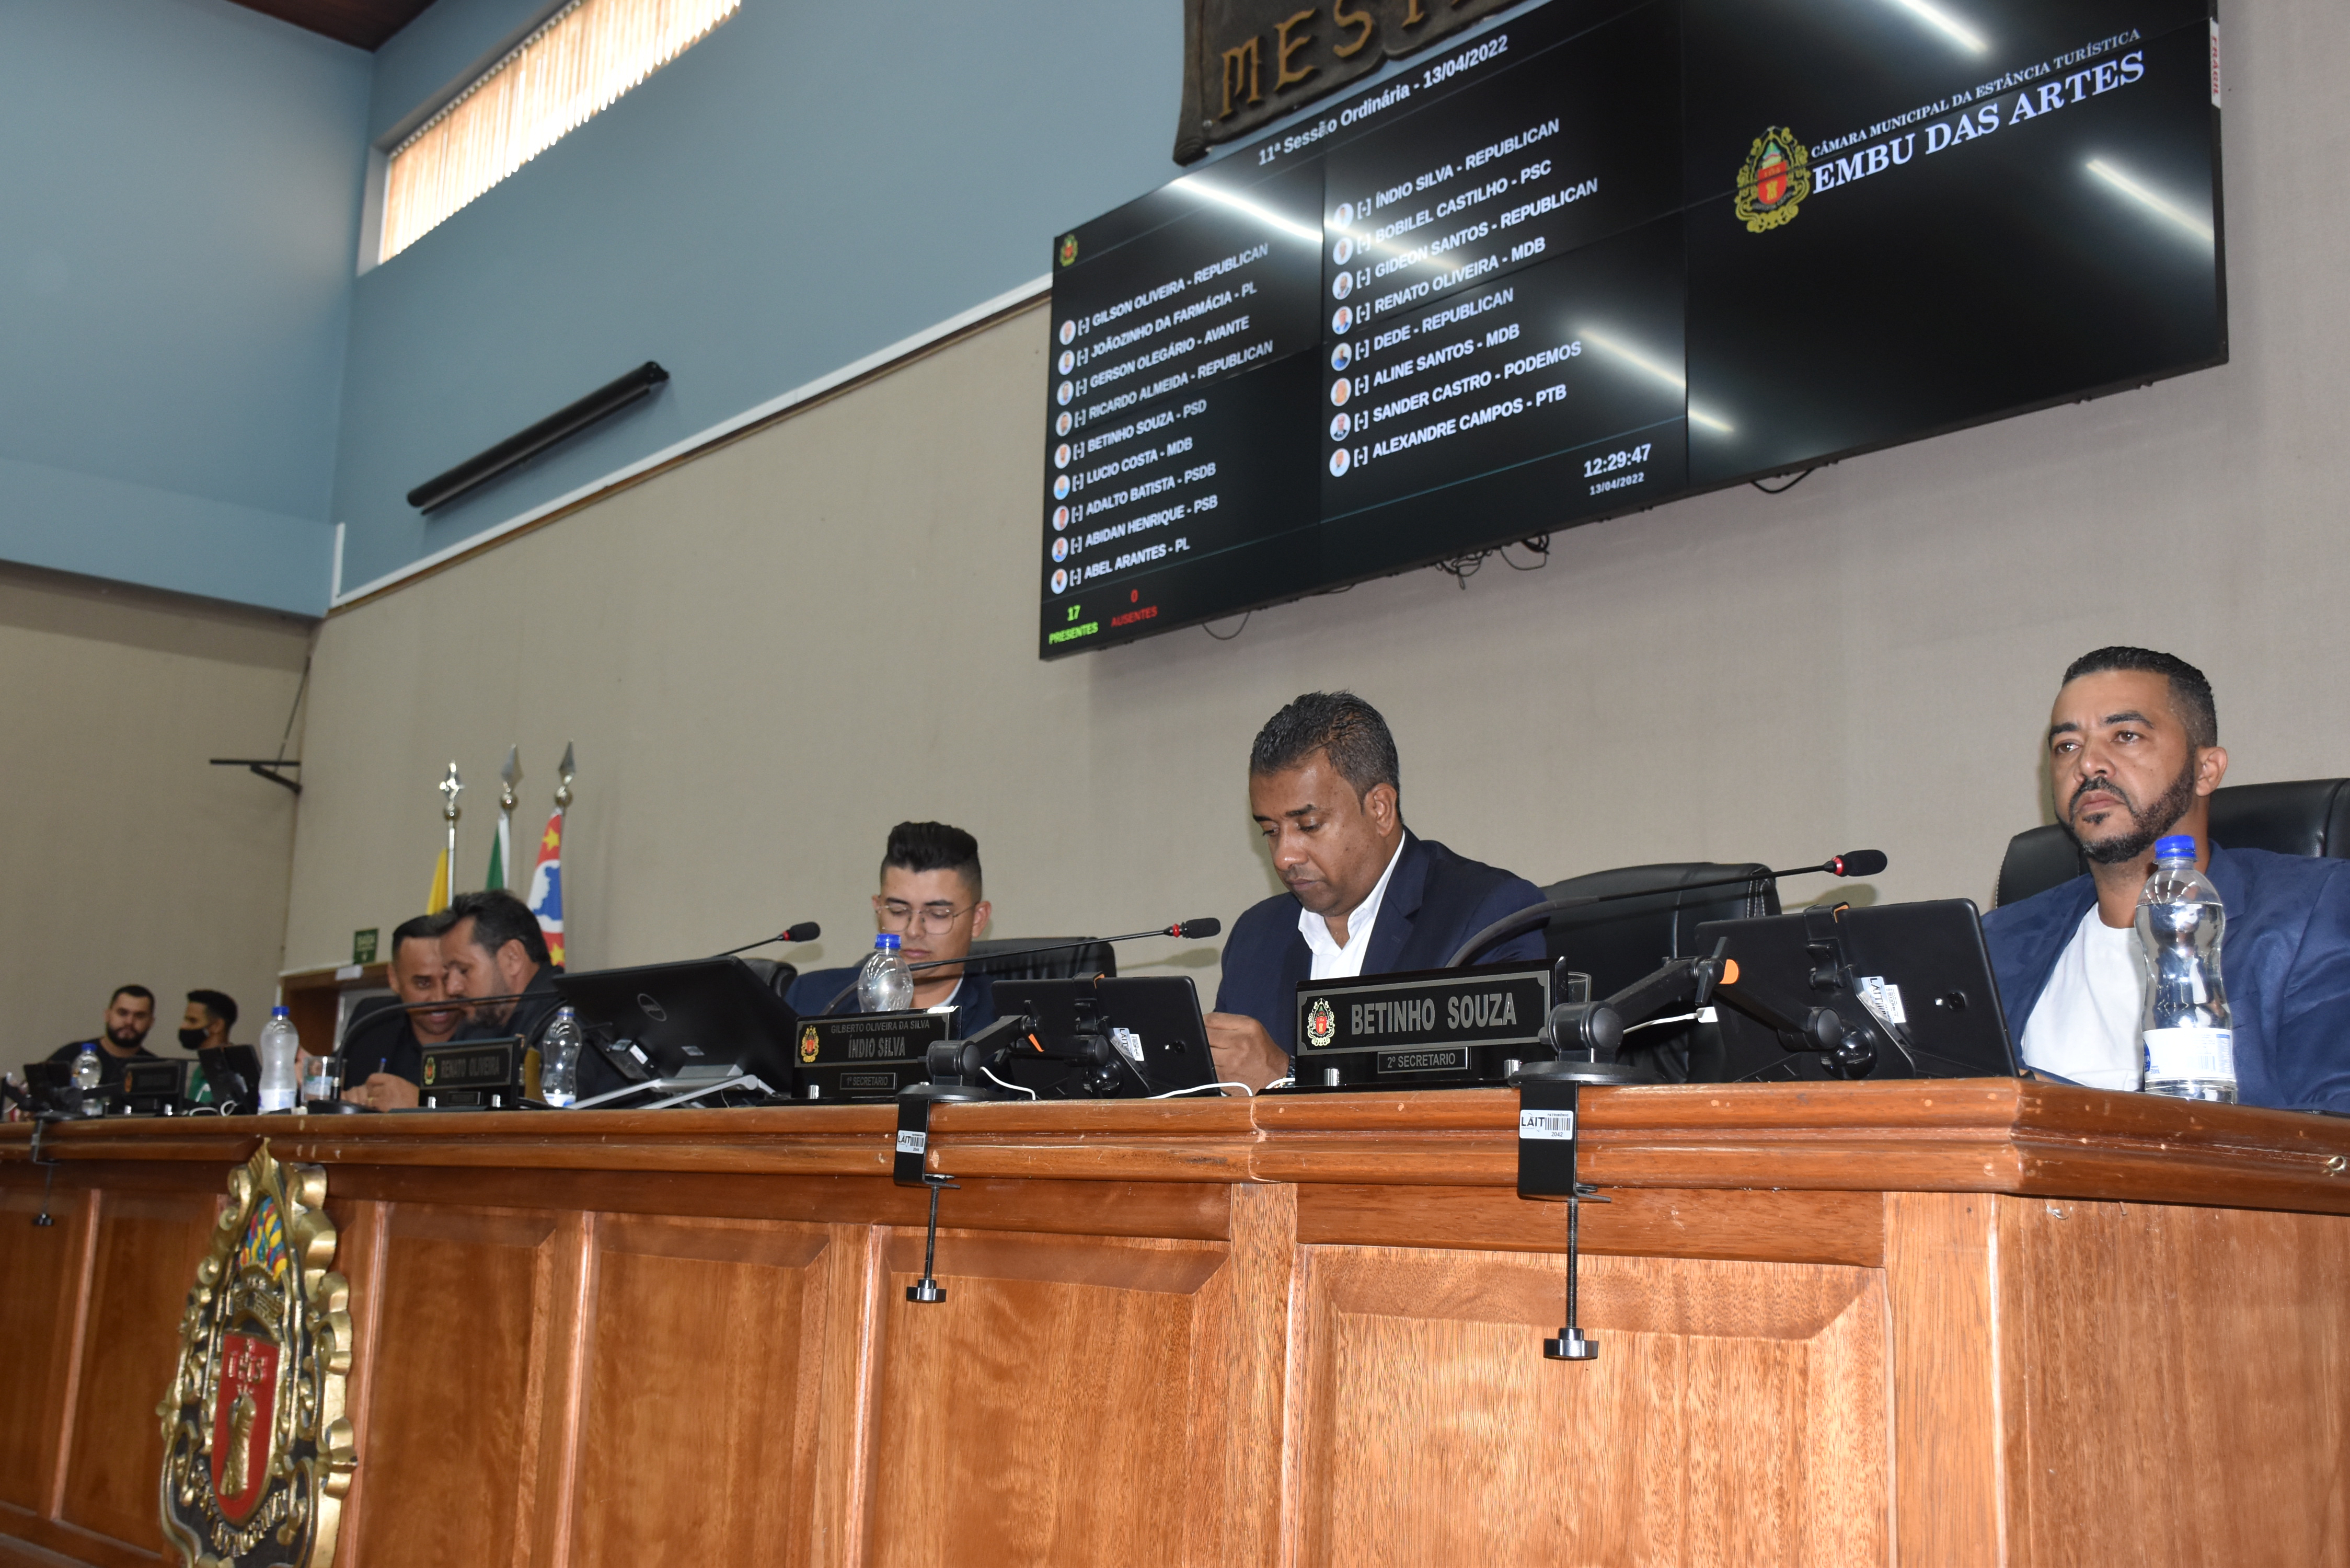 Câmara aprova parcelamento de dívidas do município com a Embuprev